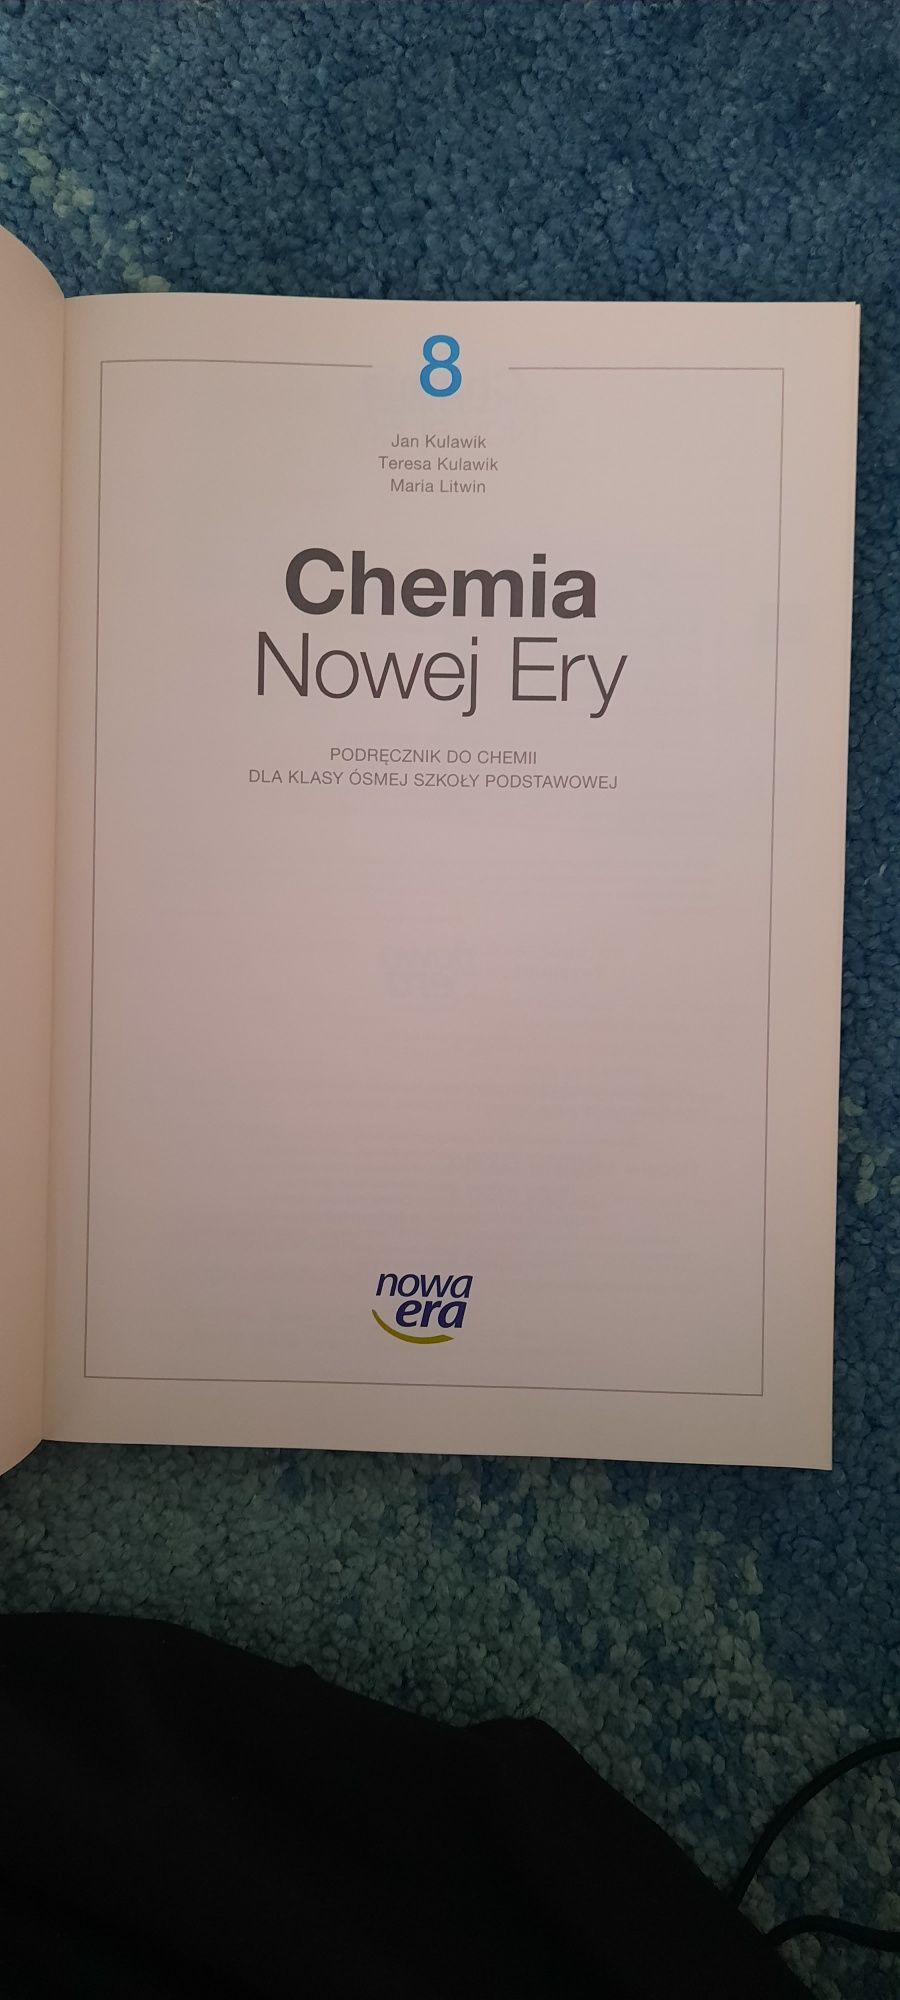 Chemia nowej ery (podręcznik, szkoła podstawowa)